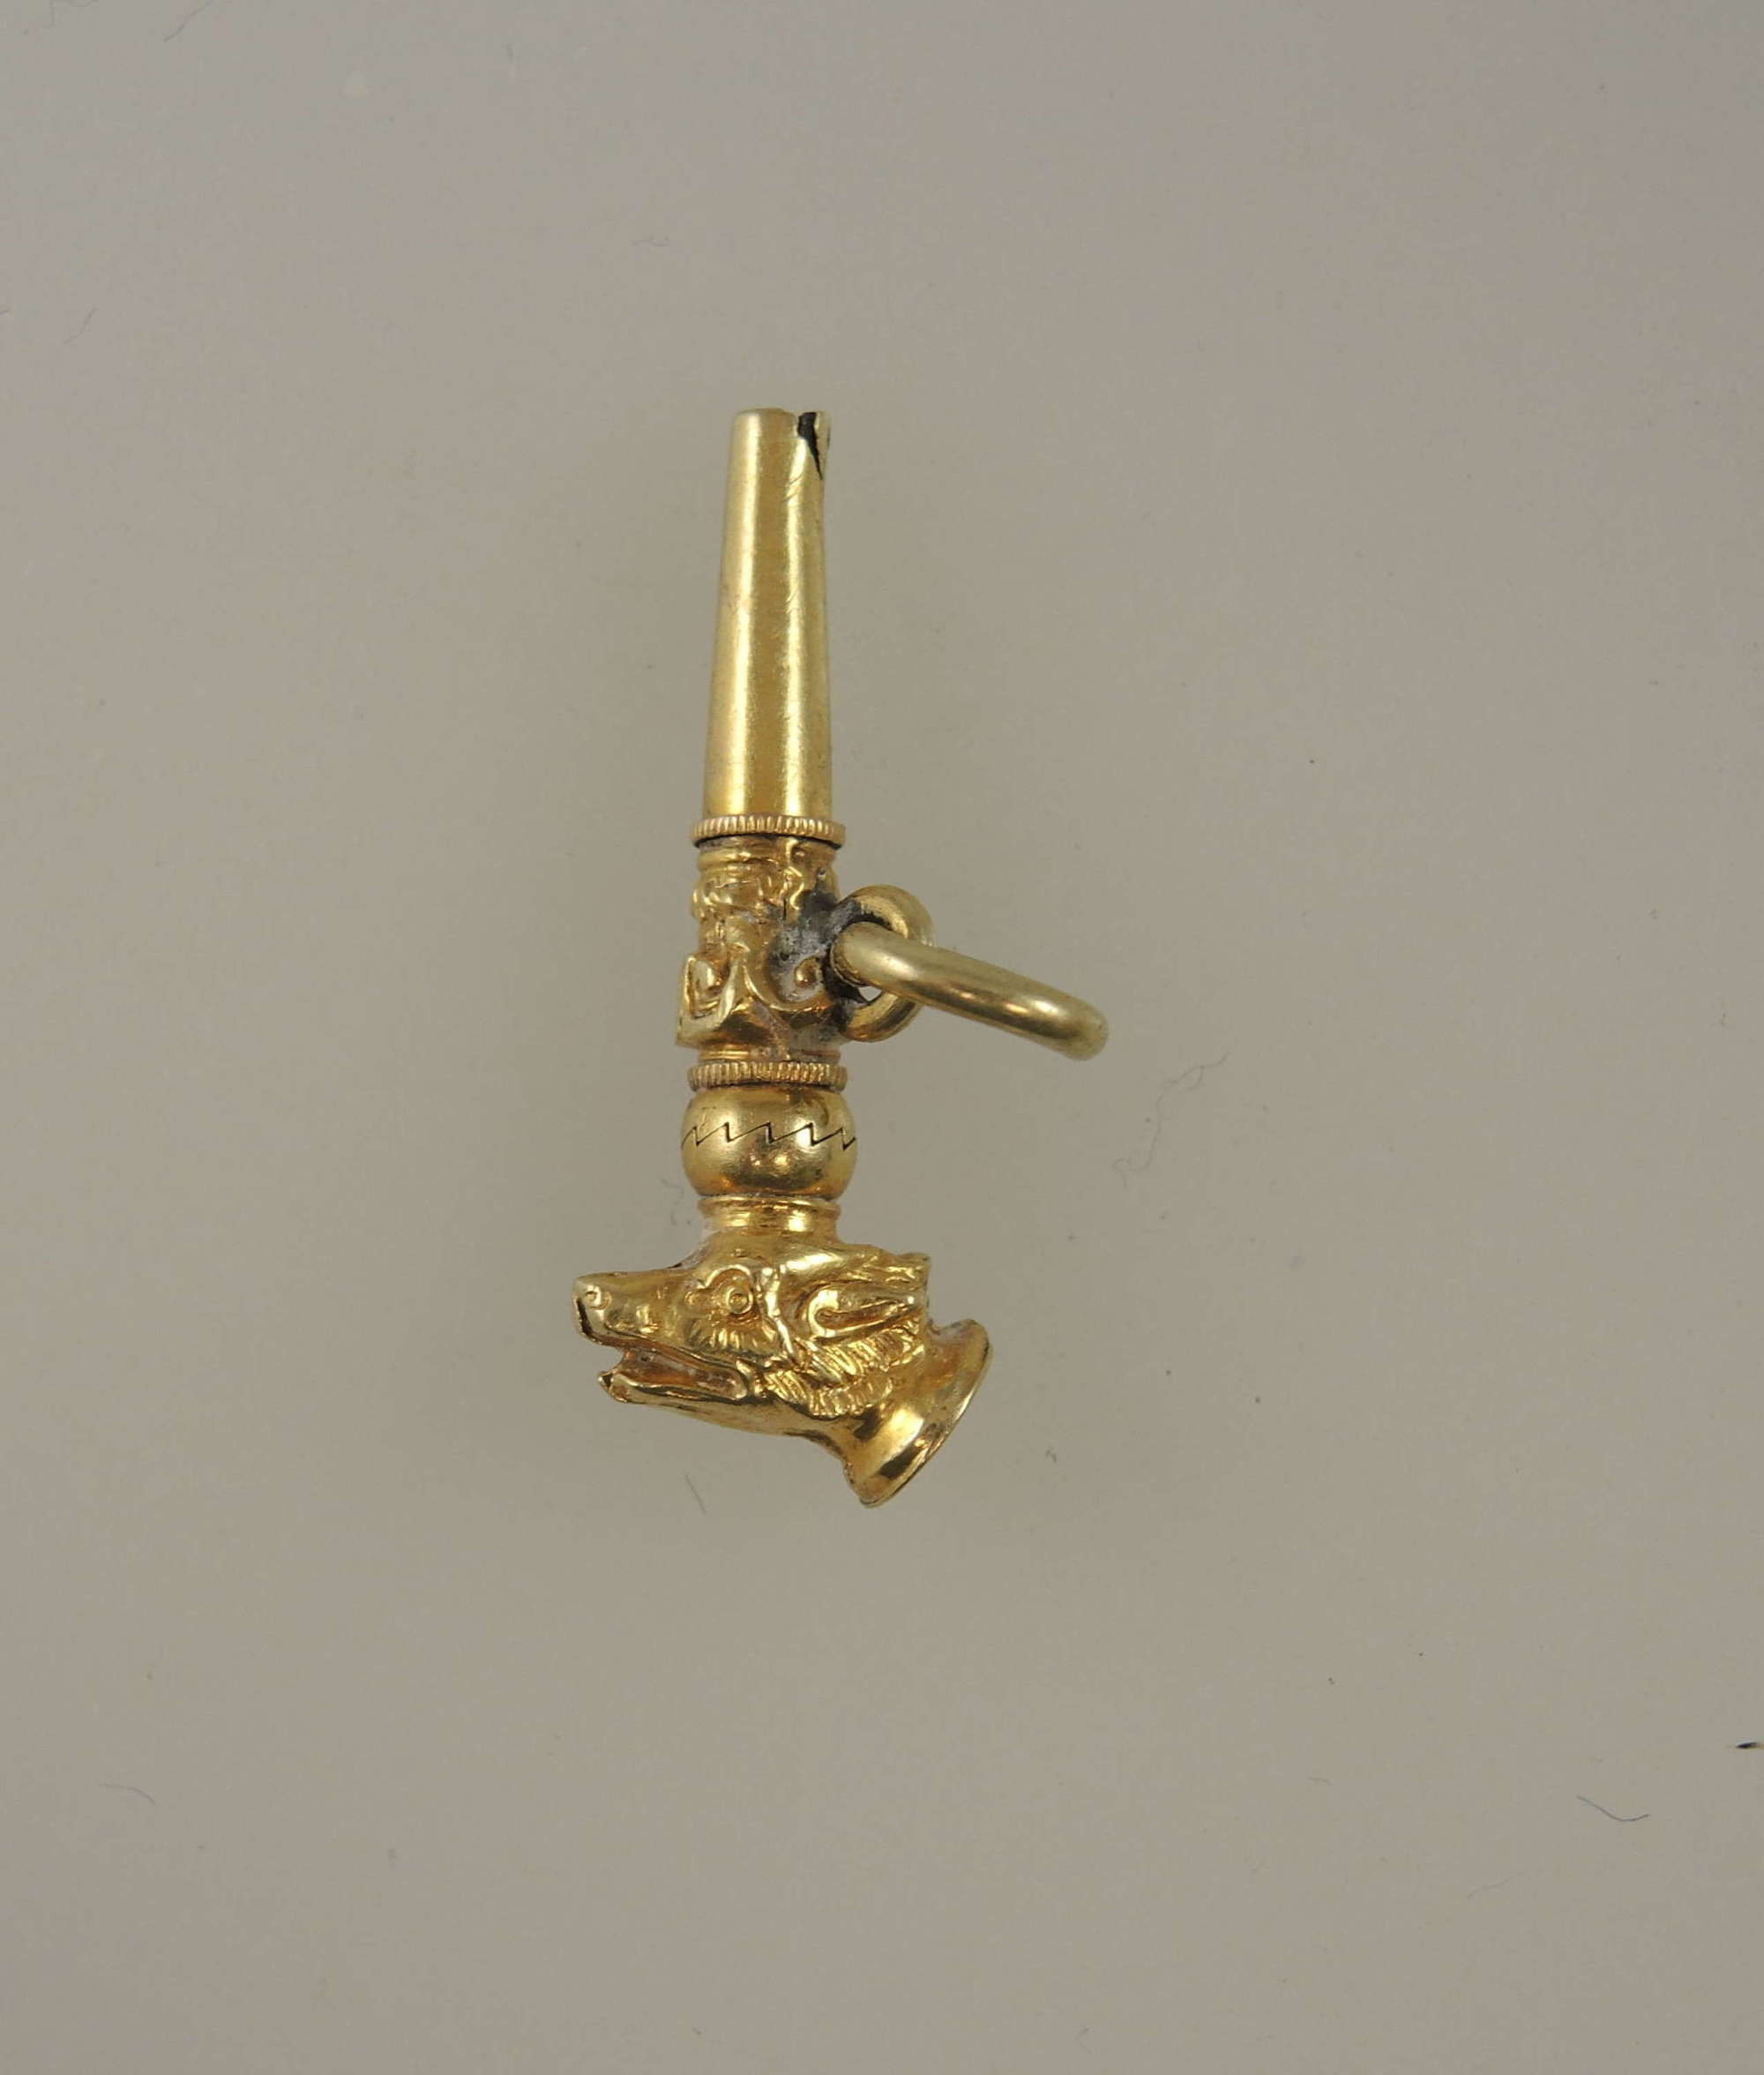 Gold DOGS head Breguet pocket watch key c1850